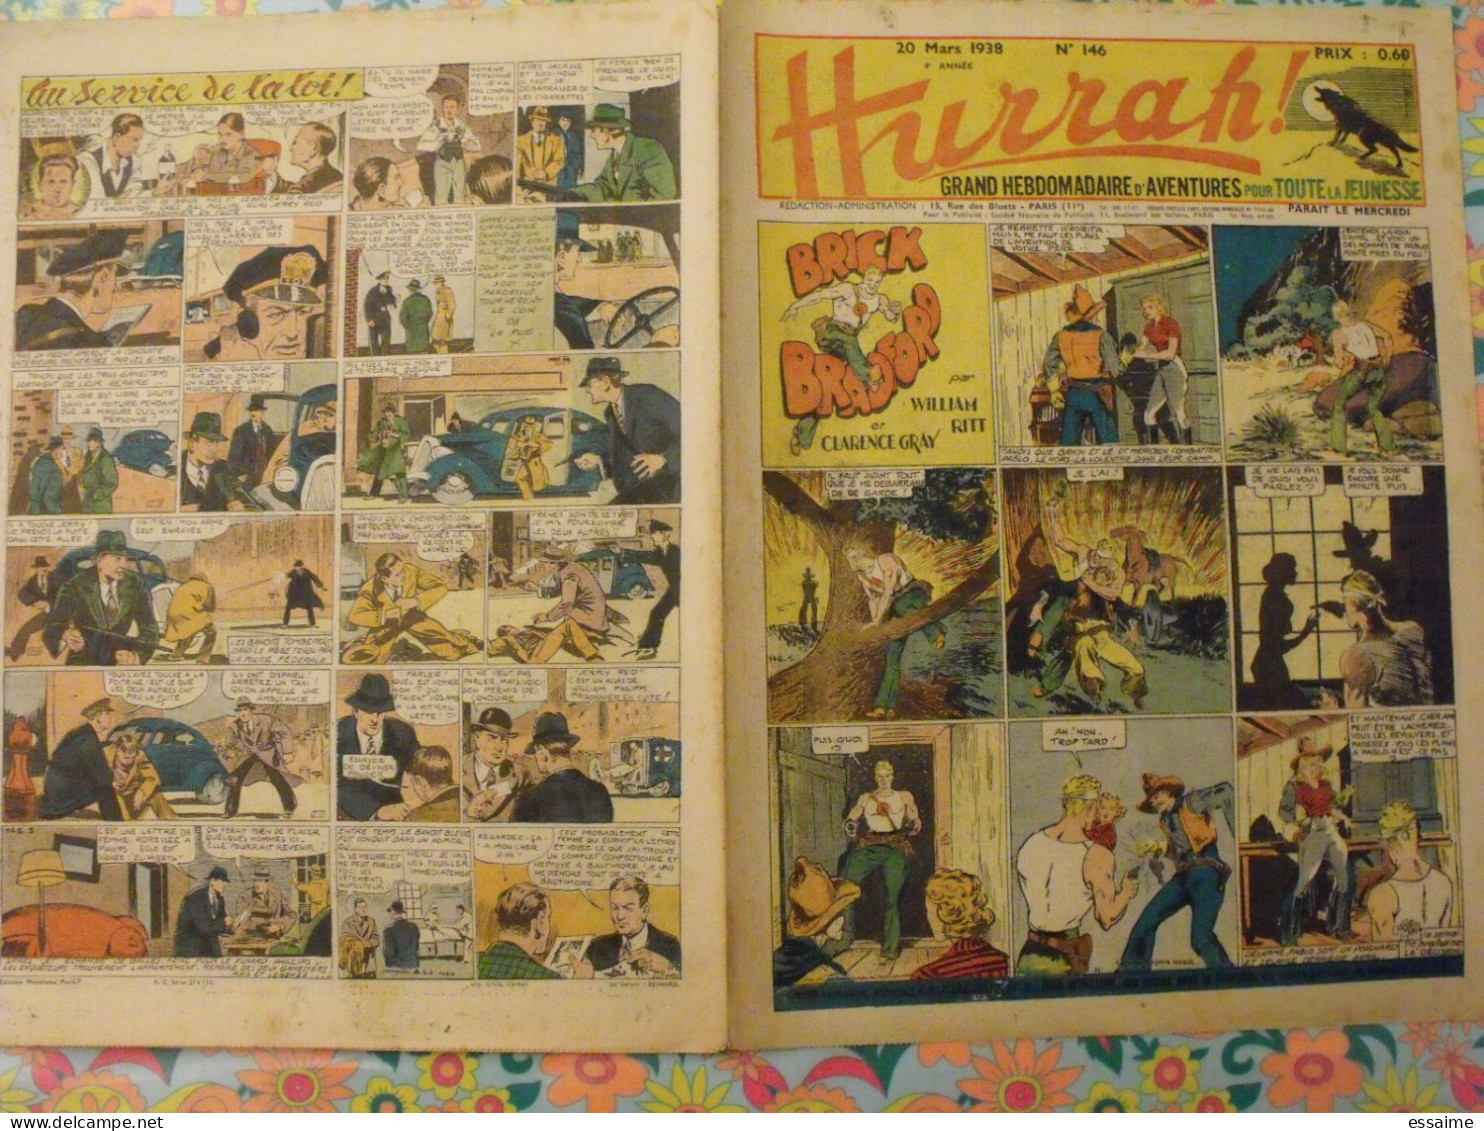 5 n° de Hurrah ! de 1938. Brick Bradford, dick l'intrépide, le roi de la police montée, gordon. A redécouvrir